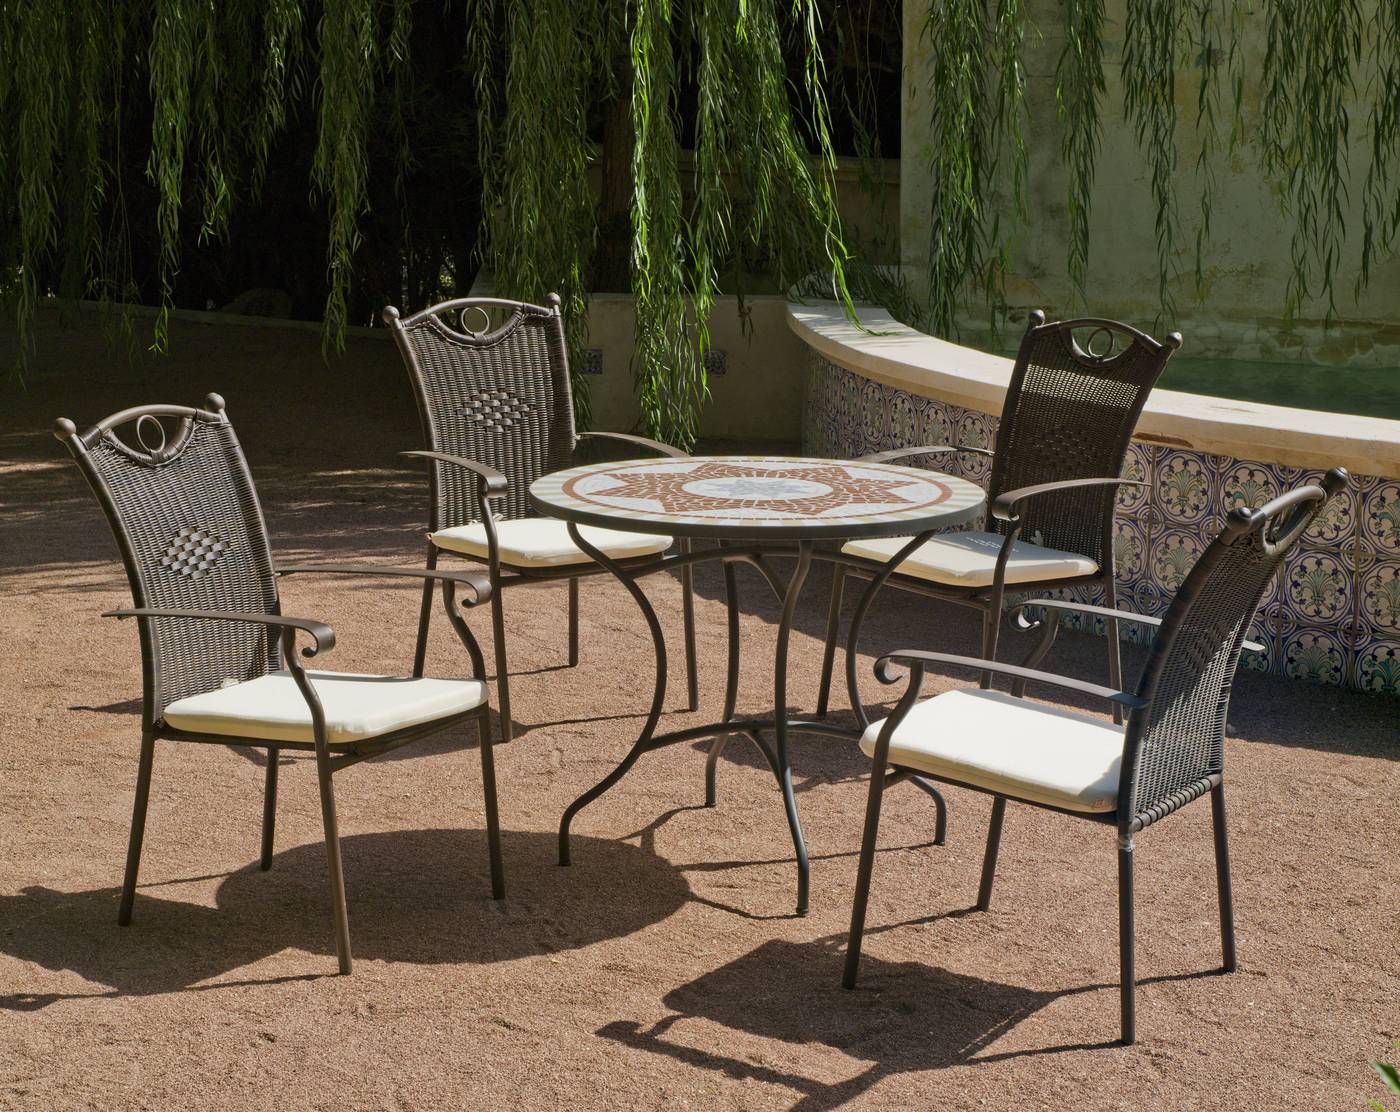 Conjunto de acero forjado color bronce: mesa redonda de forja, con tablero mosaico de 90 cm. + 4 sillones de acero y wicker